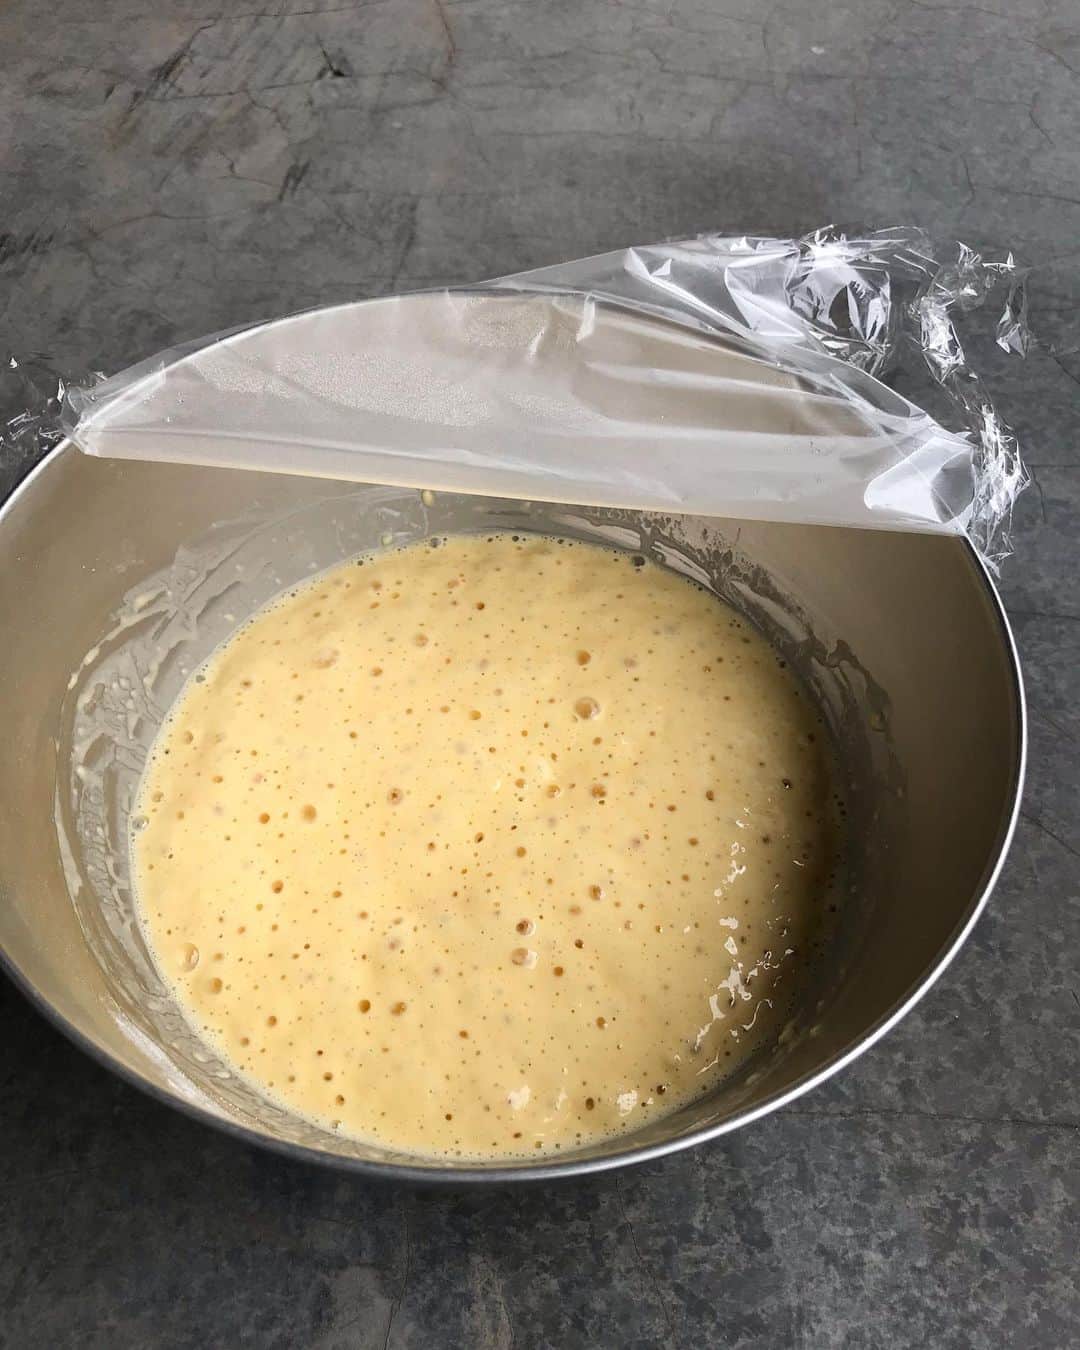 福田淳子さんのインスタグラム写真 - (福田淳子Instagram)「【ブリュッセルワッフルの作り方です】 イーストで生地を発酵させて作ります。カリッとしてて、中はふわふわもっちり。甘さひかえめで、朝ごはんにもぴったりです。素材の持つシンプルなおいしさを味わってください。 ＜材料＞ ☆薄力粉　45g ☆強力粉　45g ☆塩　少々  牛乳　120ml 砂糖　20g ドライイースト　小さじ１（３g） 卵　１個　（室温に戻しておきます）  食塩不使用バター　30g ＜作り方＞ １．大きめのボウルに☆を入れて泡立て器で混ぜておく。 ２，牛乳を40度くらい（目安はぬるめのお風呂の温度）温めてイースト、砂糖を加えて混ぜる。 ３，小さめのボウルに卵を割りほぐし、２を加えて混ぜる。 ４．１に３を少しずつ加え混ぜる。 ＊粉類に液体類を加えるのがポイントです！ ５，ラップして暖かい場所に置く。（30〜60分）プクプクと発酵し倍の量になったら溶かしバターを混ぜて焼く。 ＜さらに細かくいうと＞ ◯我が家では「ビタントニオ」のワッフルメーカーを使っています。スクエアのプレートを使うときっかり4枚分になります。 ◯薄力粉＋強力粉がふわふわもっちりの秘訣です。 ◯イーストは50度を超えると動きが悪くなり、60度では完全に死滅します。牛乳の温度が45度を越えないようにしましょう。 ◯混ぜる時に粉に液体が大事。ホットケーキ・パンケーキだと逆なんです。なんとなく液体に粉を加えたくなりますが注意してください。 ◯発酵時間は温度と湿度と生地温度に左右されます。この時期はだいたい30〜60分の間。今日で40分くらい。冷蔵庫から出したての卵使うと発酵に時間がかかります。暑い時期は涼しい場所に置いてくださいね。ボールの中が35〜40度くらいがいい温度帯です。 ◯いい感じに発酵したらすぐ焼きます。10分くらいならば待てますが、ある一定以上進むと過発酵になって膨らみが悪かったり、酸味が出たり、アルコール臭がします。 ◯バターを混ぜると、一旦泡は消えます。焼くとちゃんと膨らみます。 ◯焼き方はお持ちのワッフルメーカーにあわせてどうぞ。 ◯愛用中のビタントニオのワッフルメーカーは火力が強いので、カリッと焼けるのが魅了。最初に焼く時に予熱少し長めに取るのがポイントです。 ◯まずは焼き立てをそのままどうぞ！途中で粉砂糖ふったり、酸味のあるジャムをつけるのがお気に入りの食べ方です。 ◯冷めたのも、これまたおいしいので（味がこなれる感じ）こちらもぜひ食べてみてください。  普段はレシピの公開はここではしないのですが、みなさまにワッフルのおいしさが伝わったらいいな、と思ってレシピを書きました。ワッフル大好きなんです。 特にブリュッセルワッフルはあんまり注目されることがないのですが、地味においしいお菓子だと思っています。なので、ぜひぜひ作ってみてくださいね。  さらに「もっといろんなワッフル作りたい〜」という人は、ぜひ『ビタントニオでかんたん焼き菓子』という本をご覧いただけるとうれしいです。この中のポテトワッフルとゴールデンワッフルも大好きなレシピです。  #waffle #brusselswaffle  #brusselwaffle  #ワッフル #ブリュッセルワッフル #ワッフルだいすき #改行がおかしくてごめんなさい #投稿できてない写真があって再度アップしました。」7月24日 10時57分 - junjunfukuda